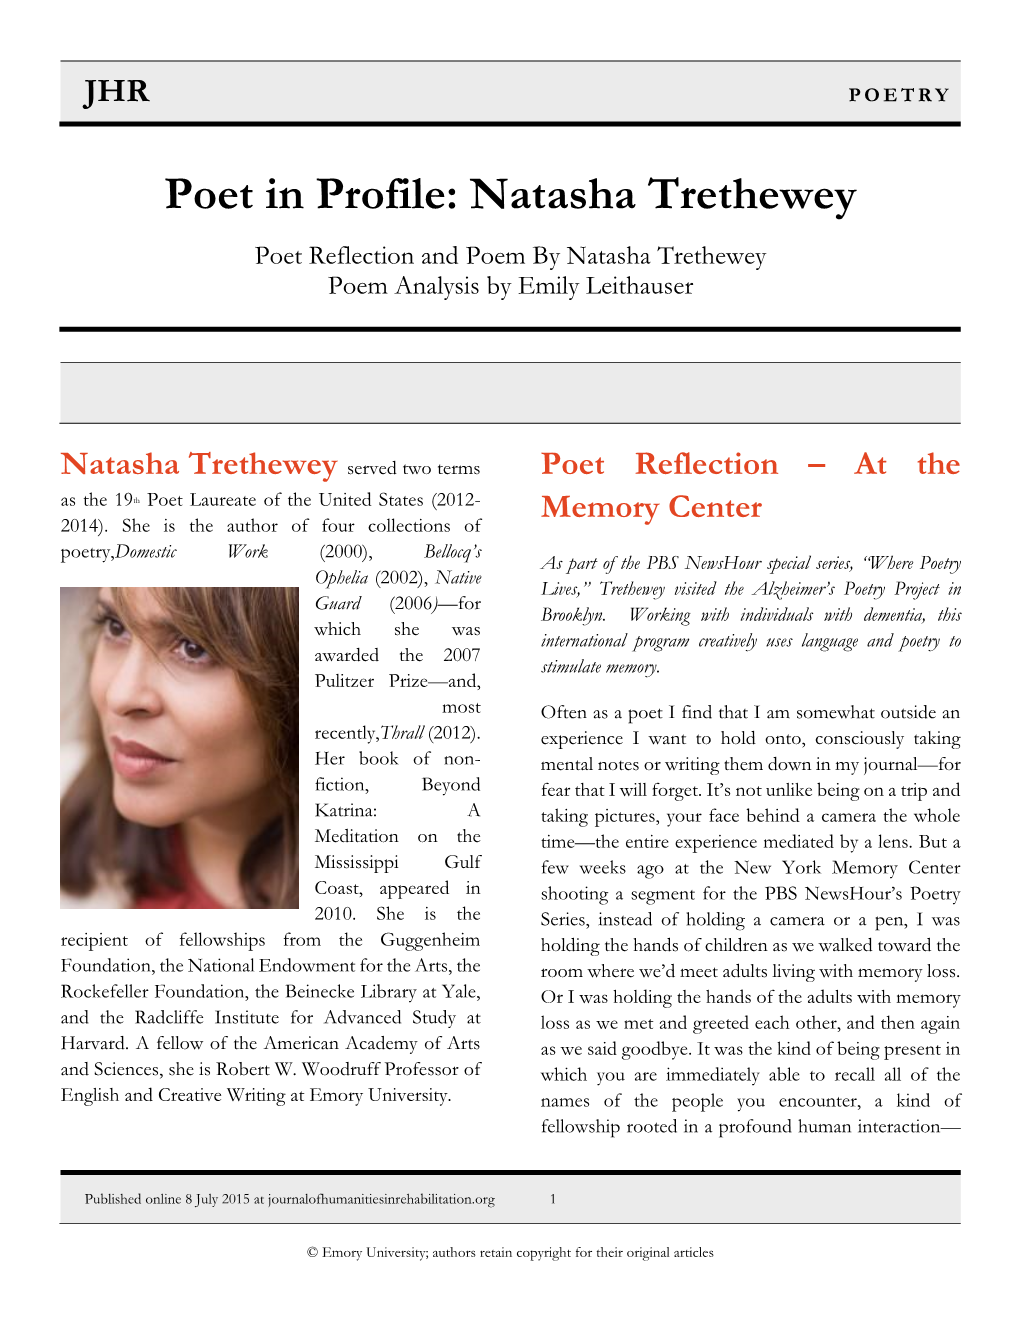 Natasha Trethewey Poet Reflection and Poem by Natasha Trethewey Poem Analysis by Emily Leithauser